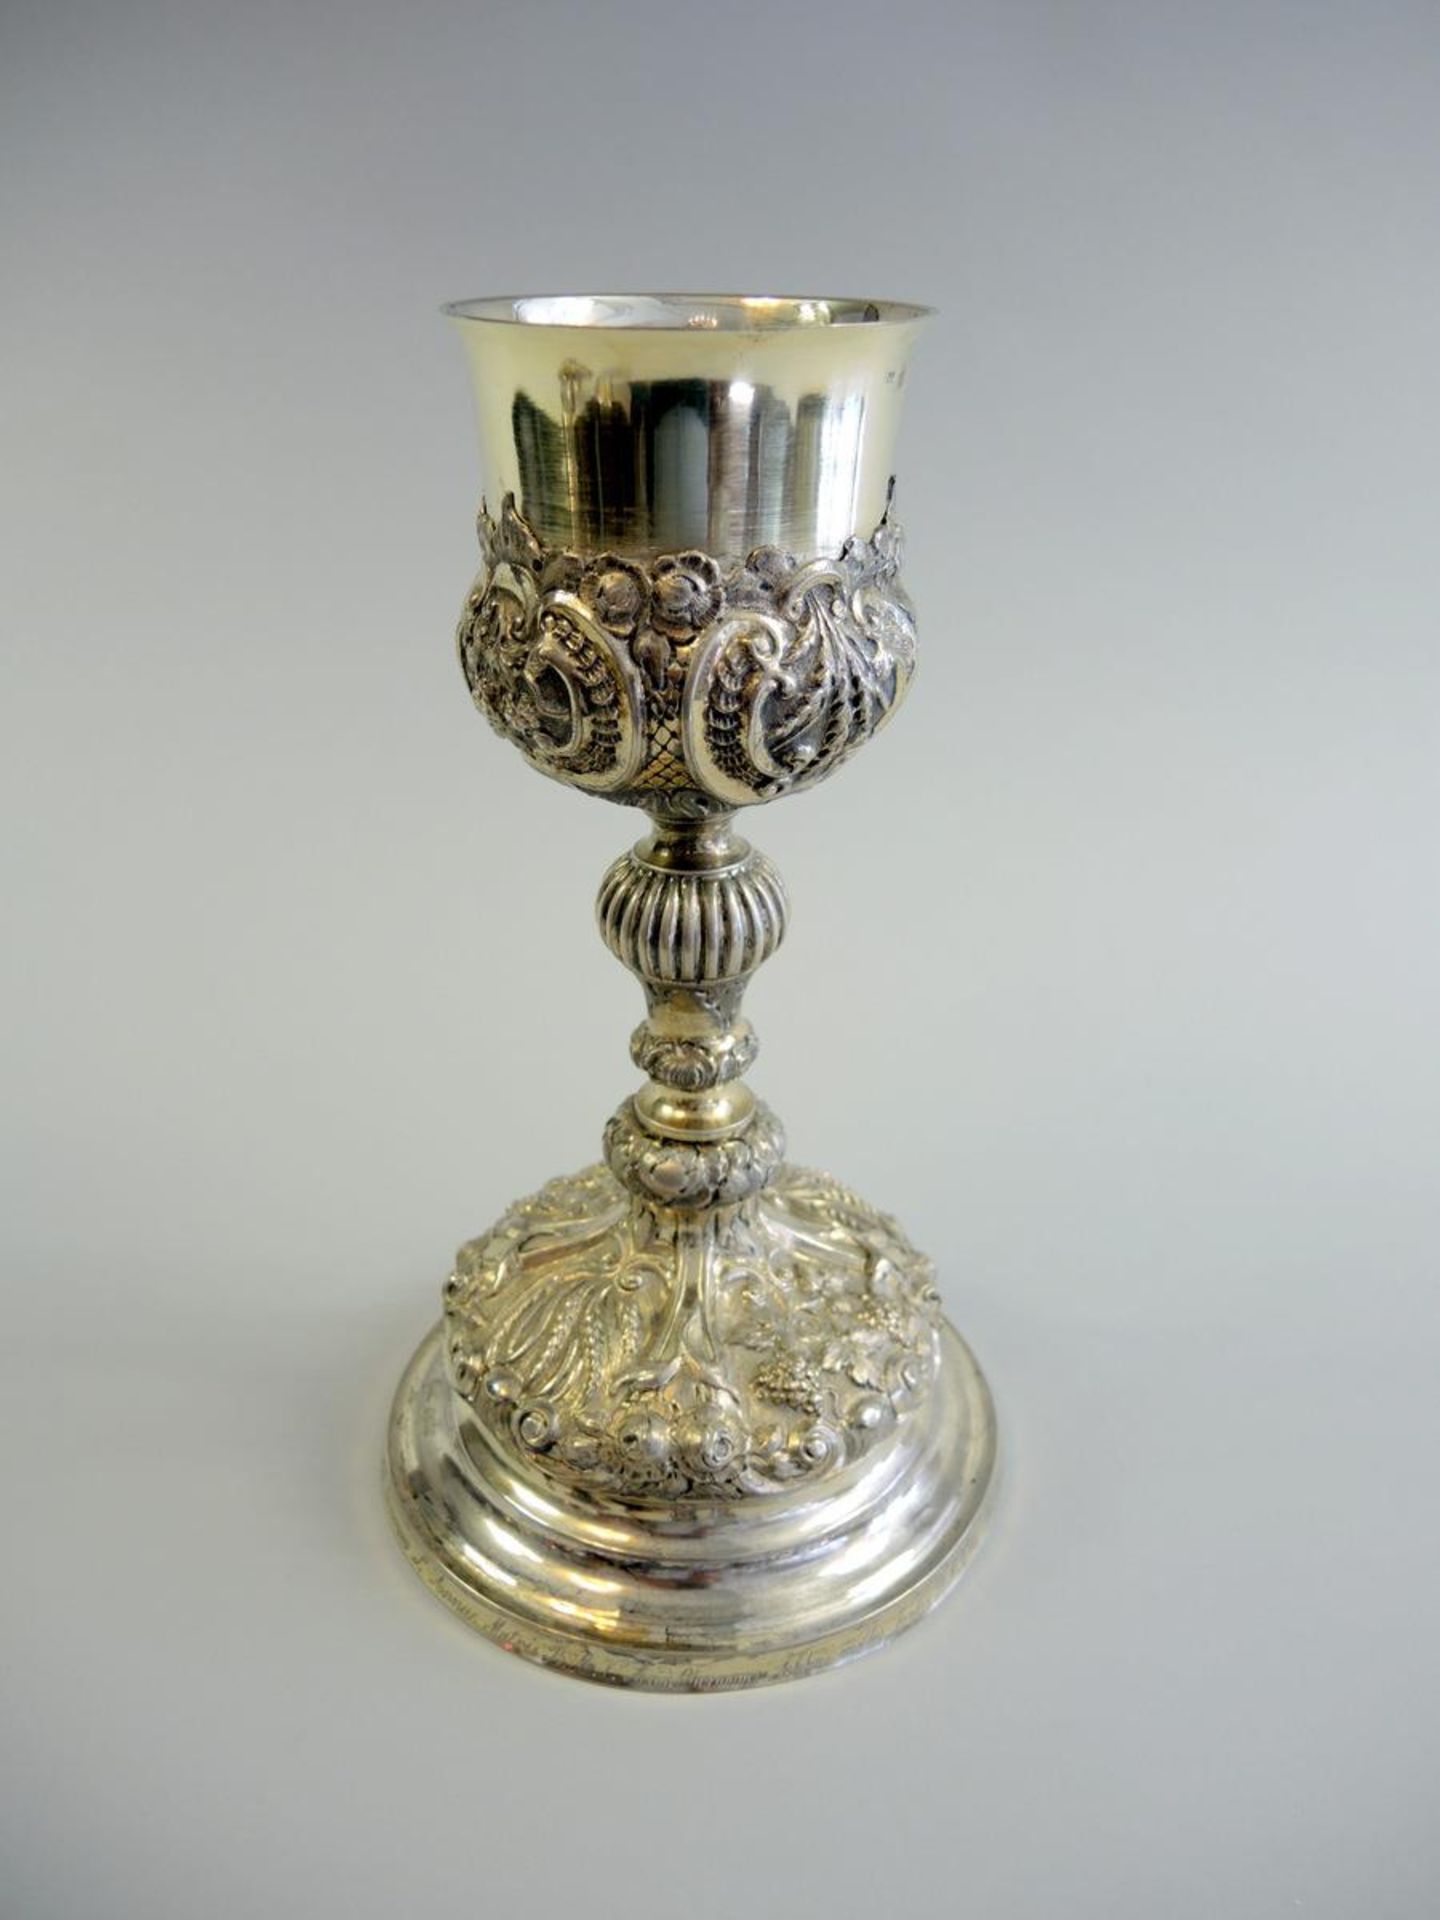 Aufwendiger Rokoko-Messkelch Silber 13 Lot, innen vergoldet. Gepunzt Wien 1858 sowie undeutliche